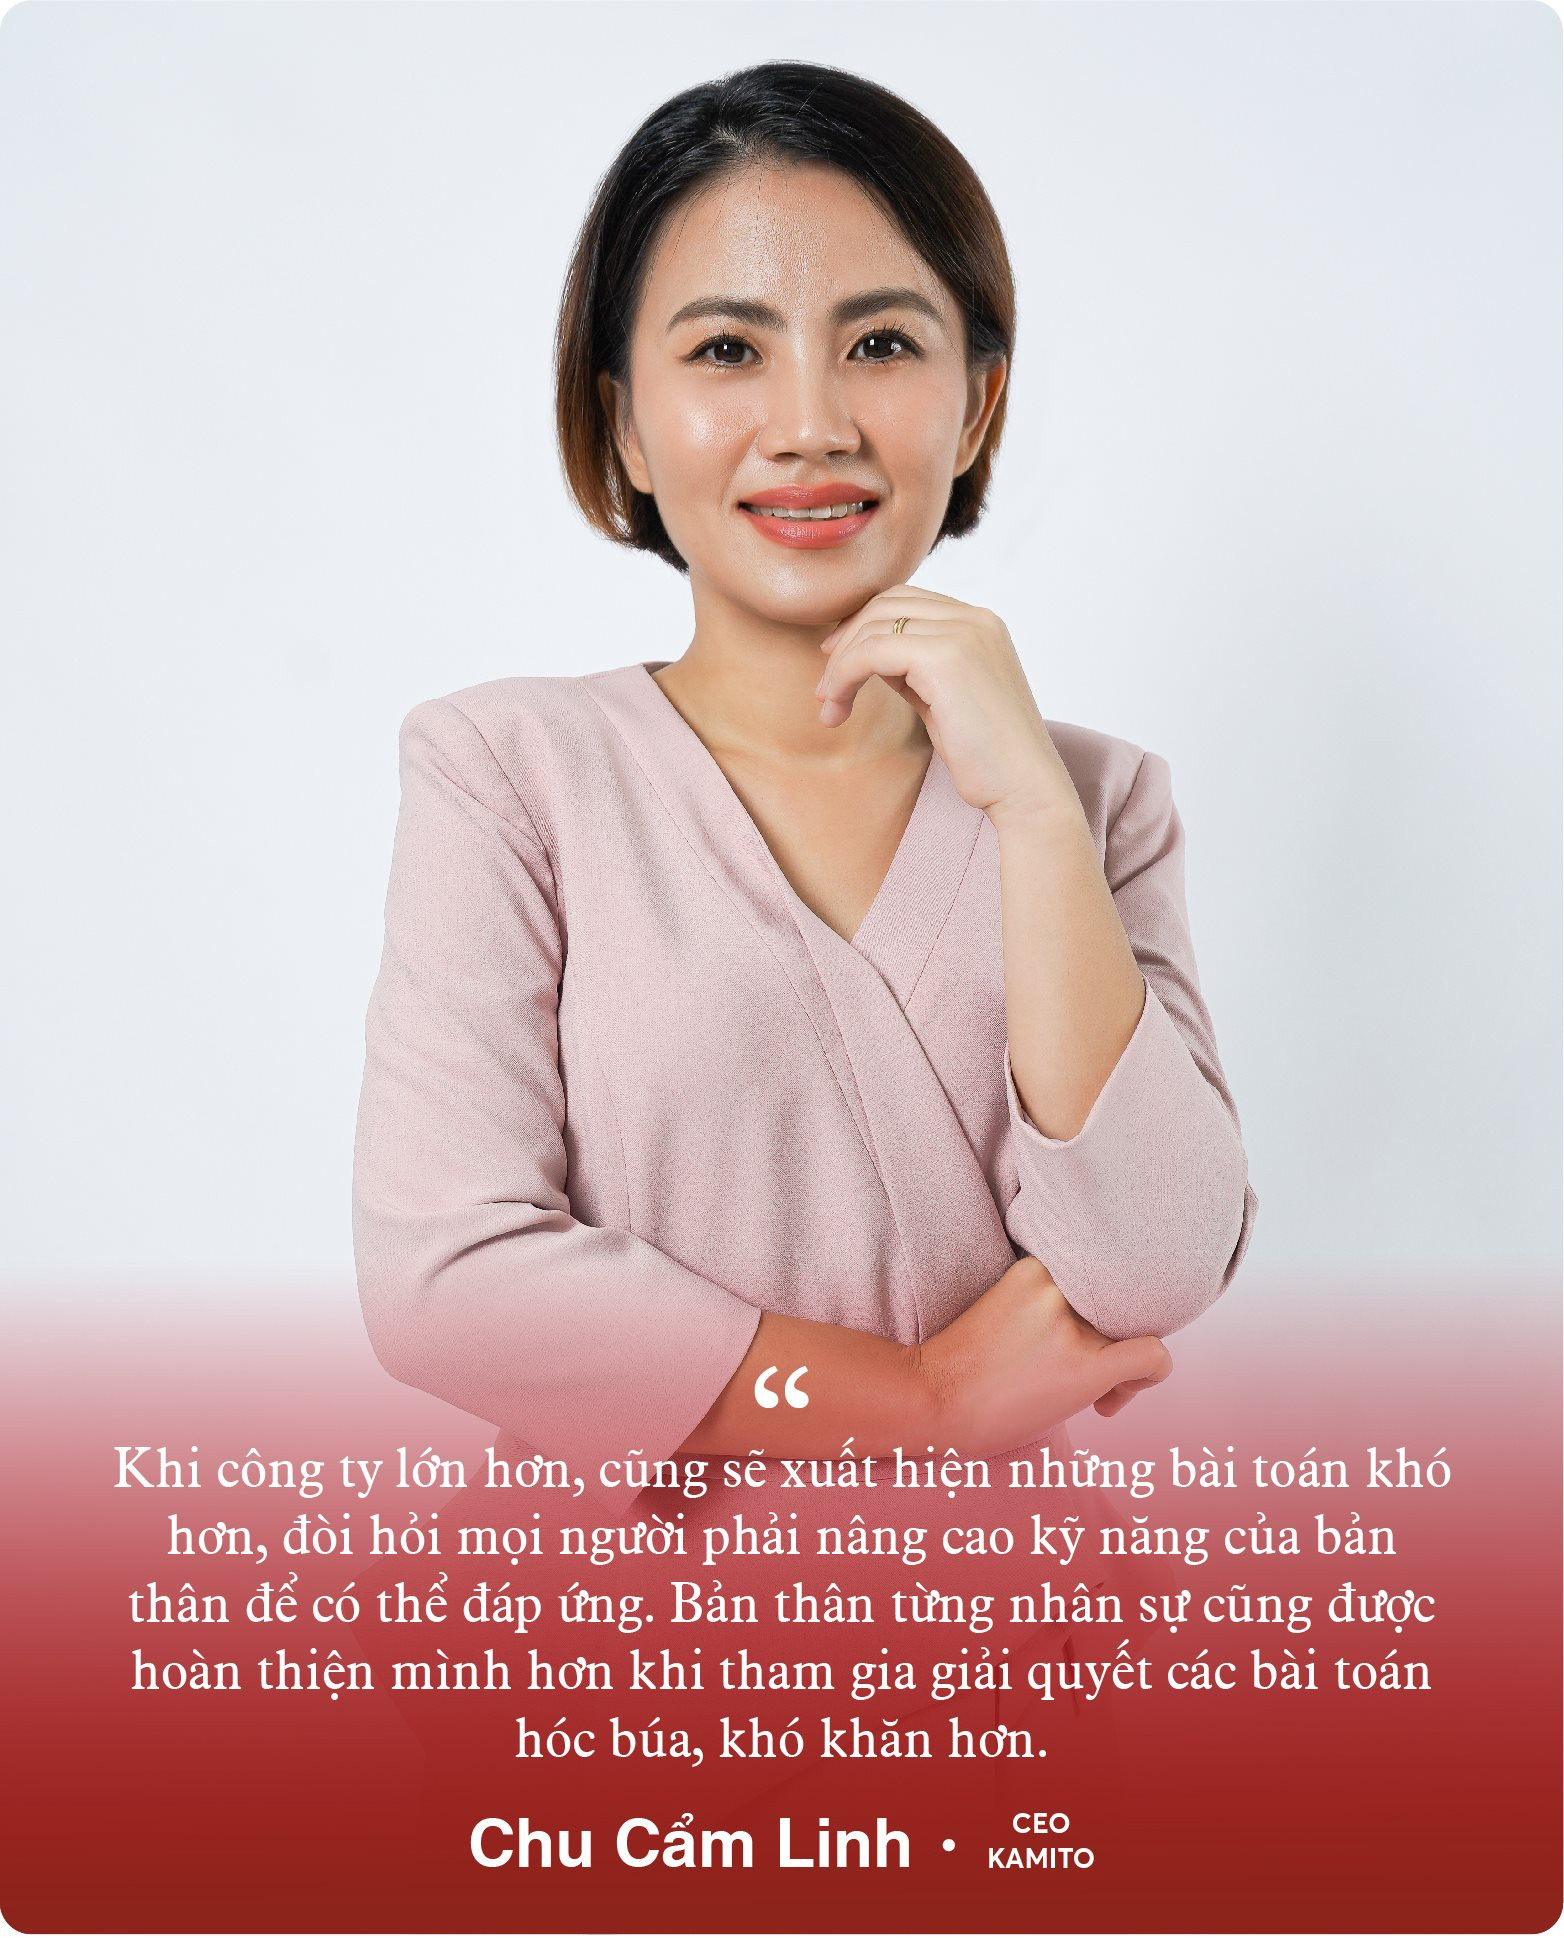 Nữ sáng lập thương hiệu Kamito: Bỏ việc ở tập đoàn Hàn Quốc để khởi nghiệp theo đam mê của chồng và hành trình dựng vị thế cho đồ thể thao Việt - Ảnh 9.